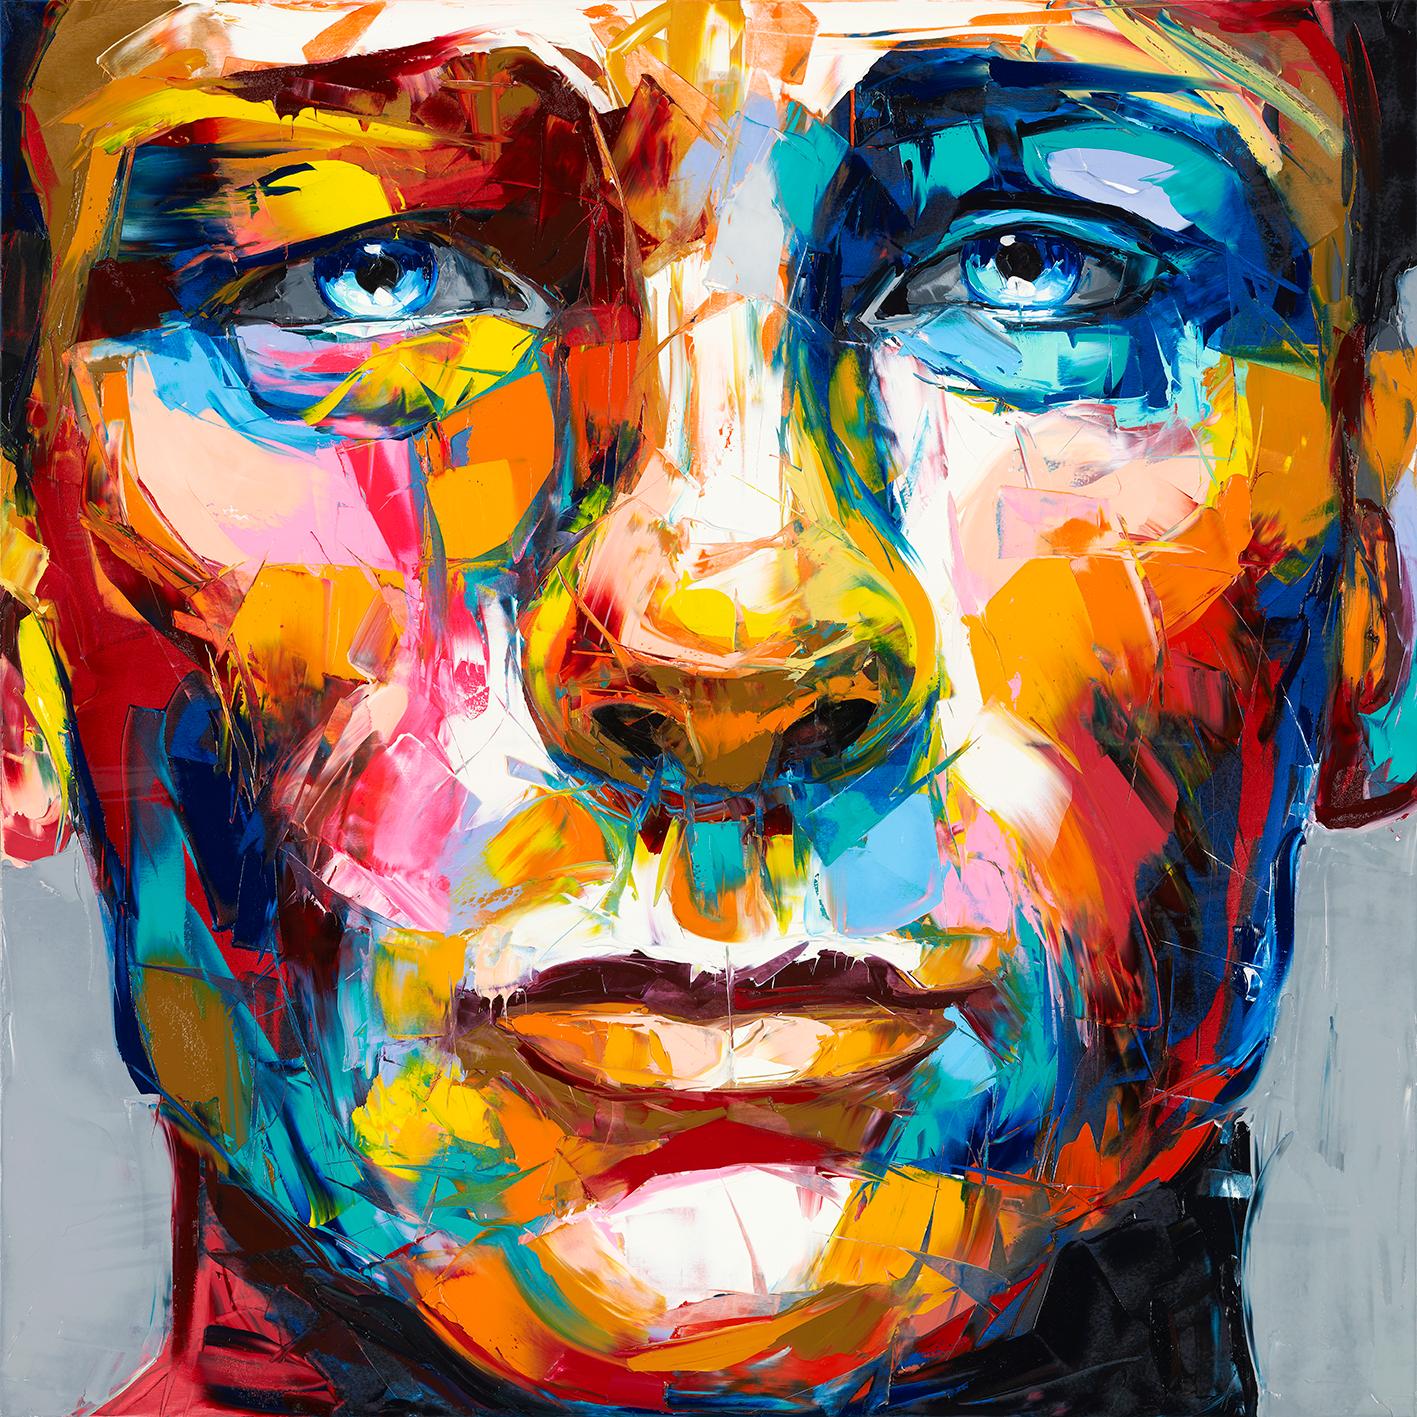 Françoise Nielly Portrait Print - Daniel Craig - 21st Cent, Contemporary, Figurative, Pigment Print, Portrait, Pop